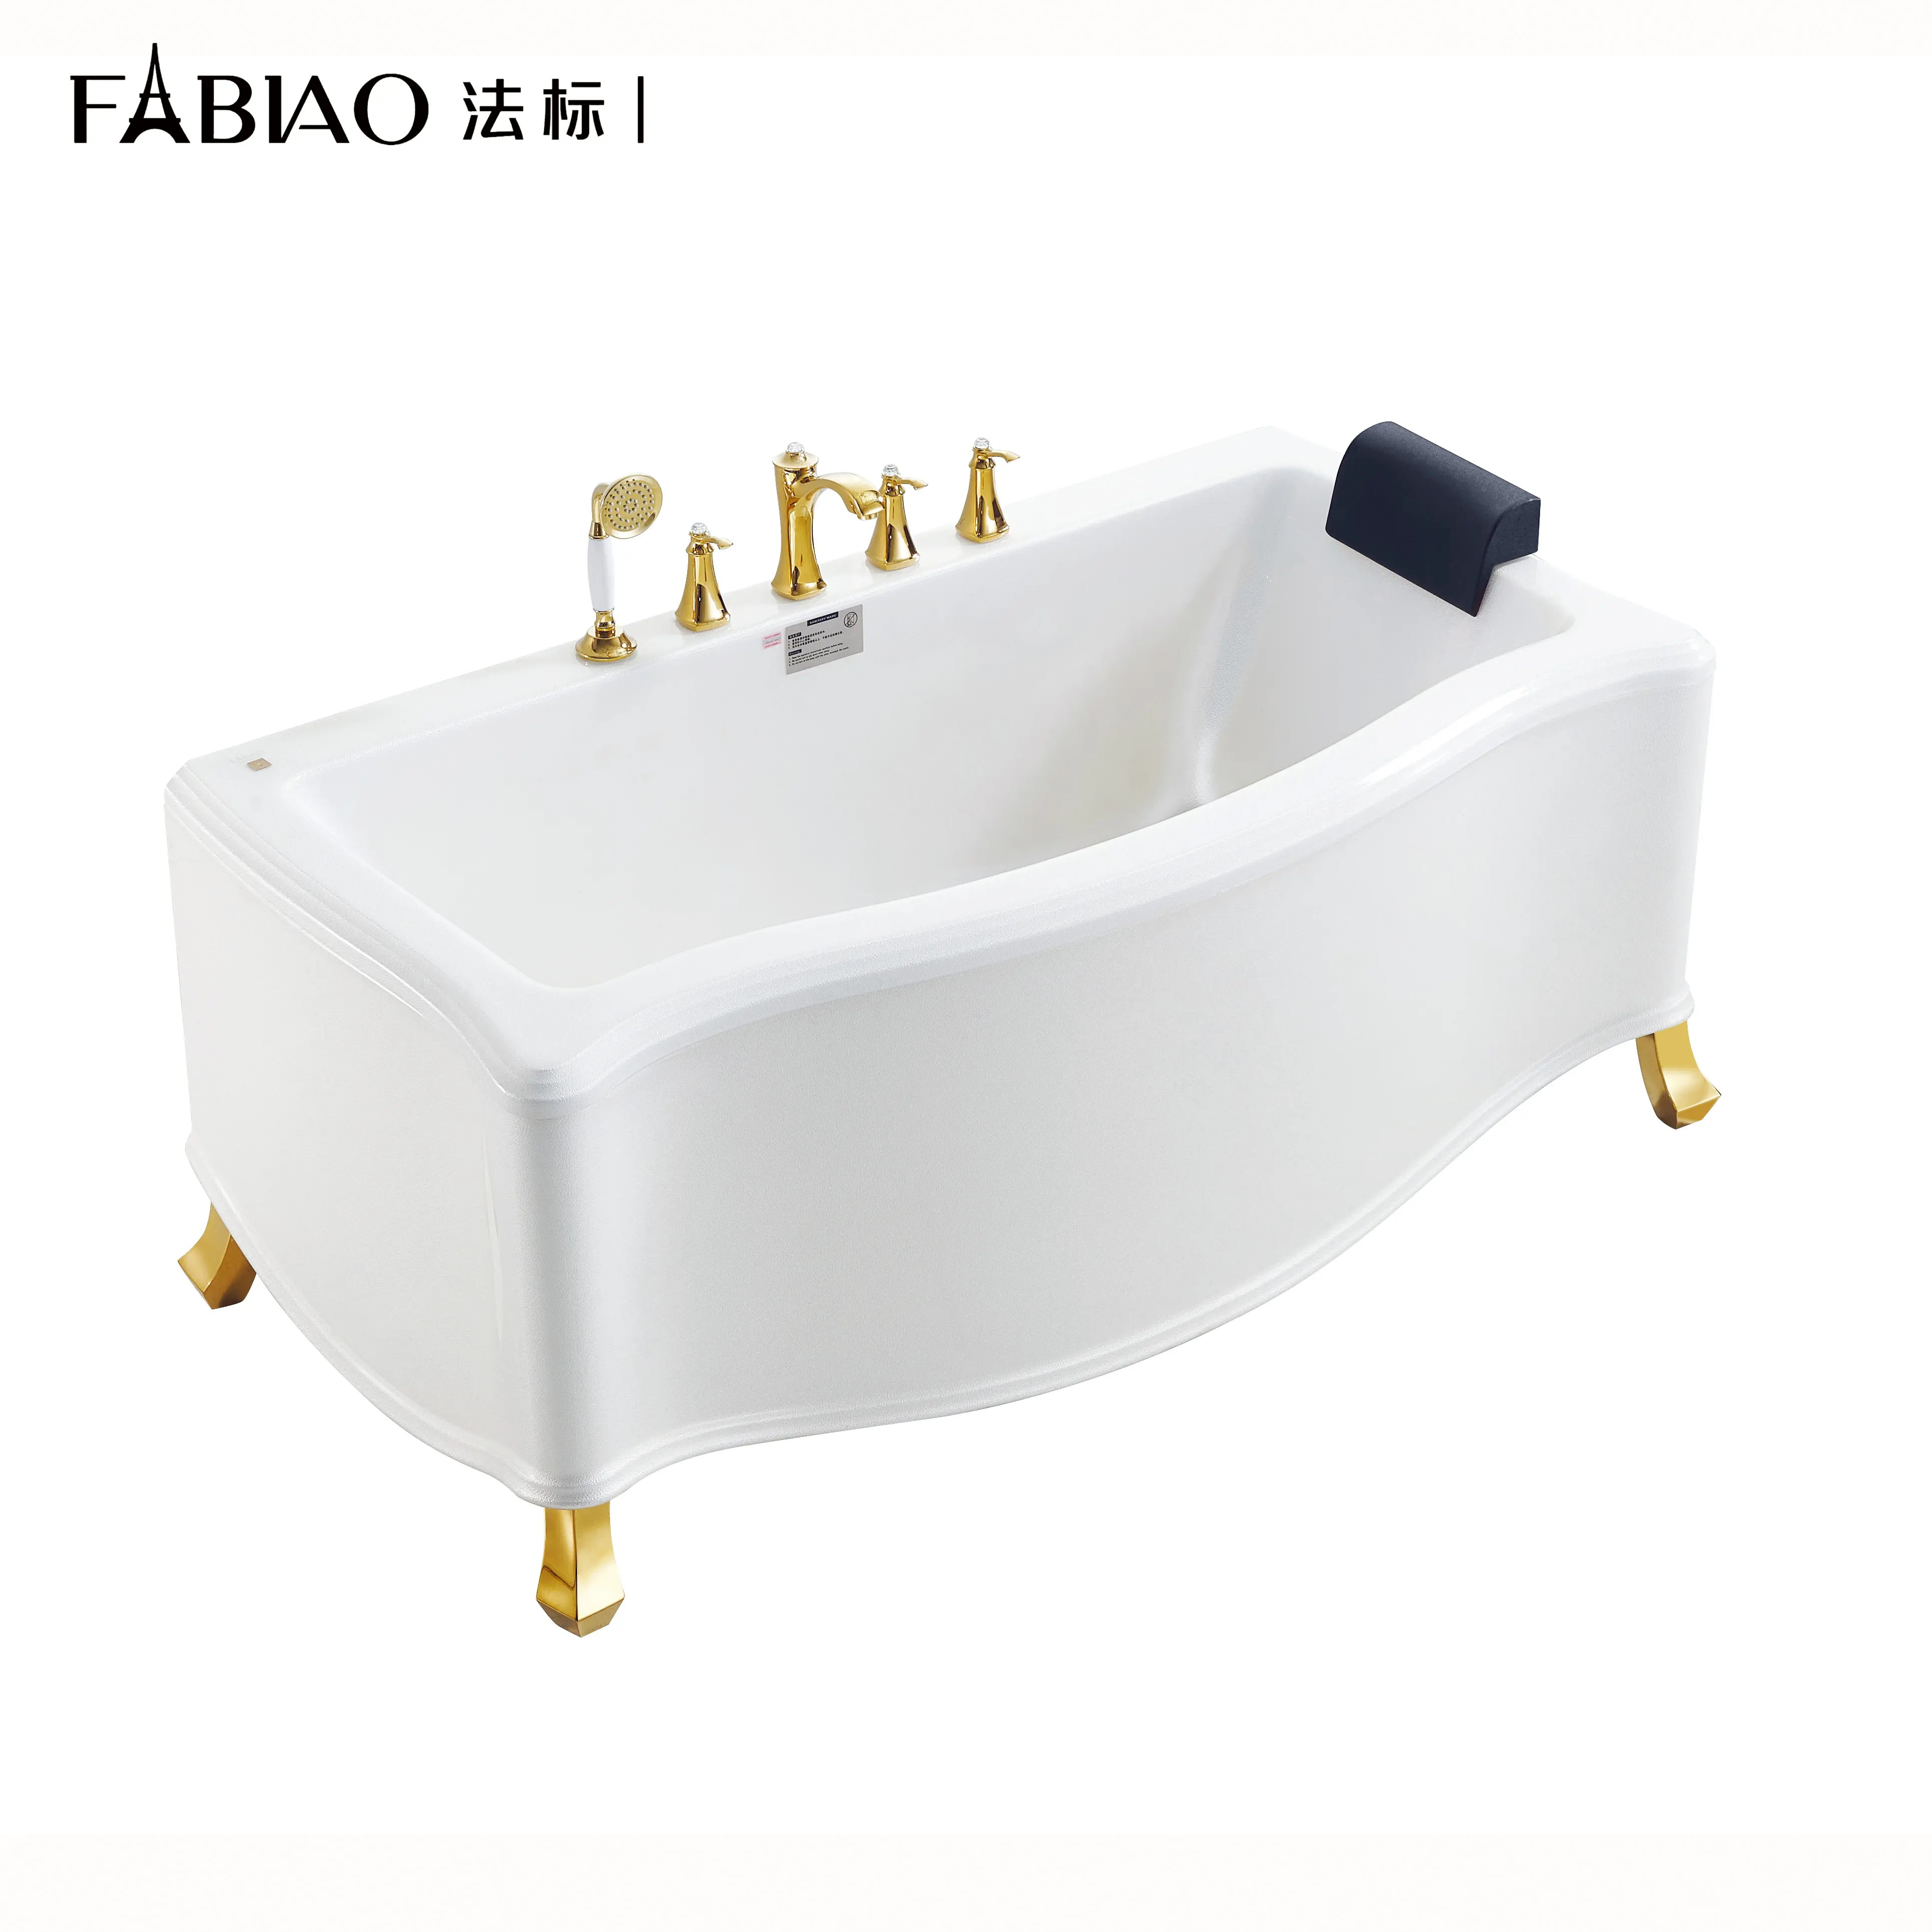 Badezimmer Eine Person kleine Badewanne Kunststoff Acryl Badewanne Gold Farbe Whirlpool Badewanne